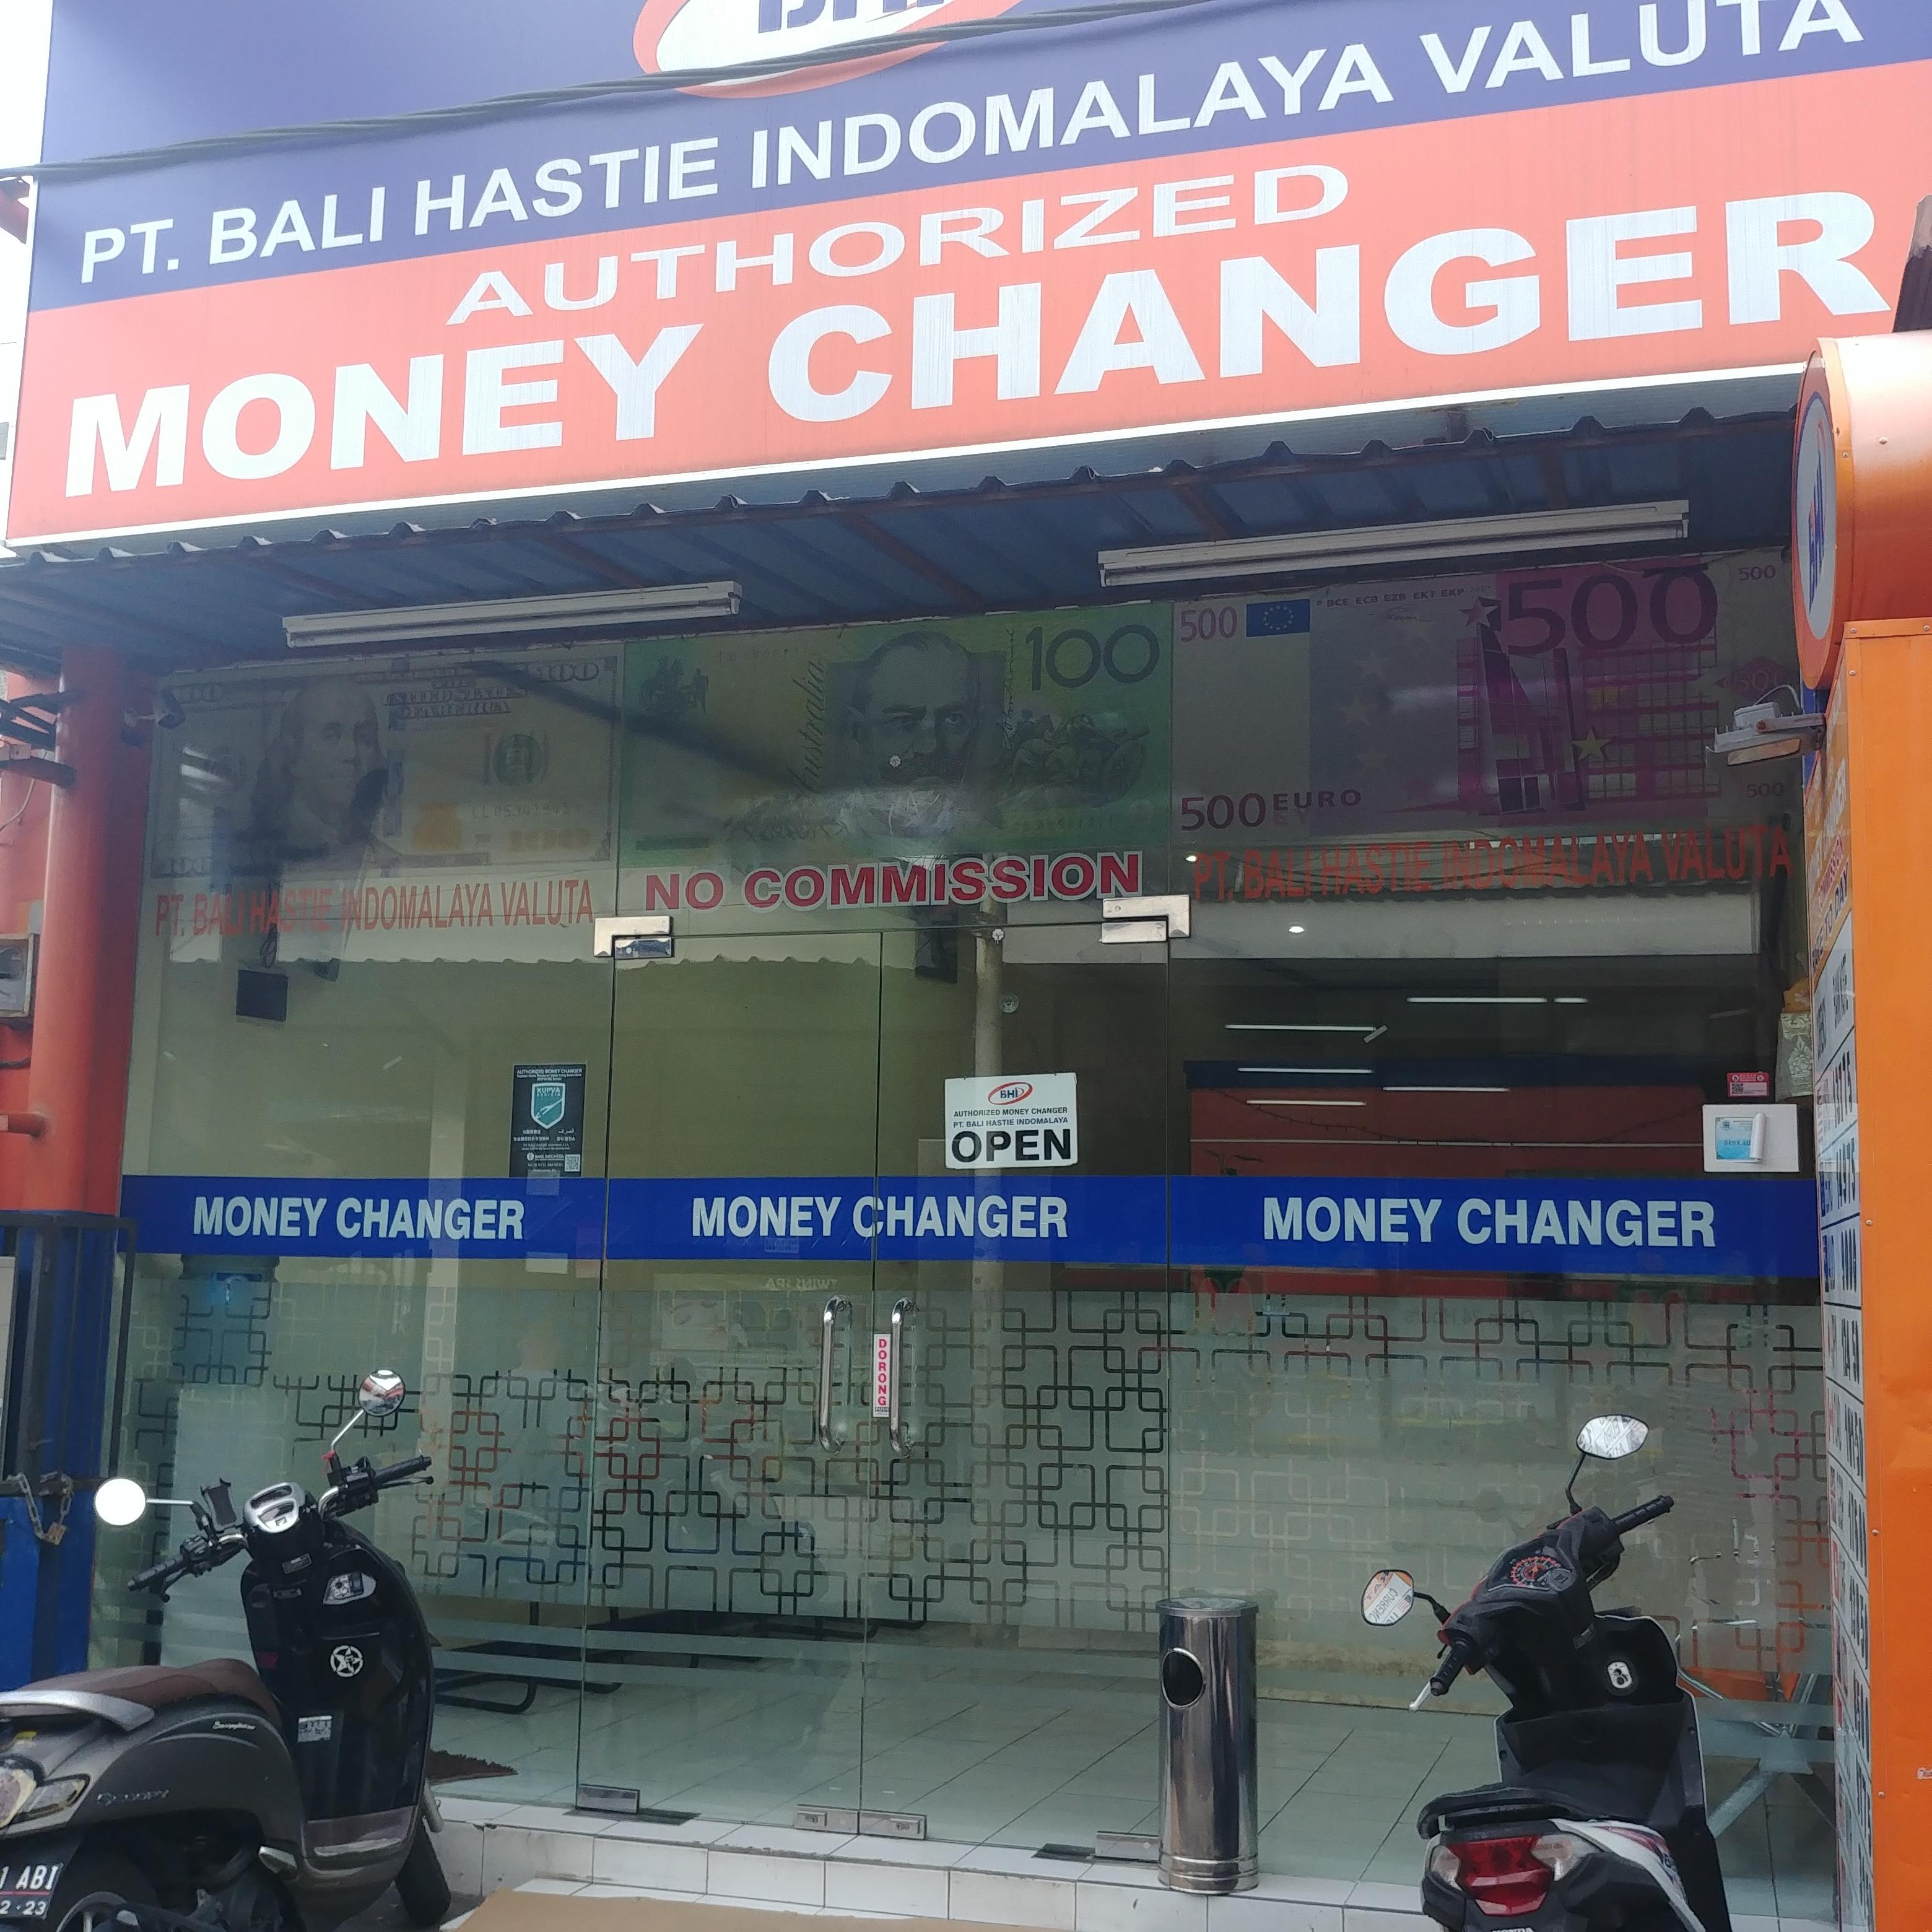 인도네시아 발리여행 환전소 Money Changer PT. Bali hastie Indomalaya Valuta